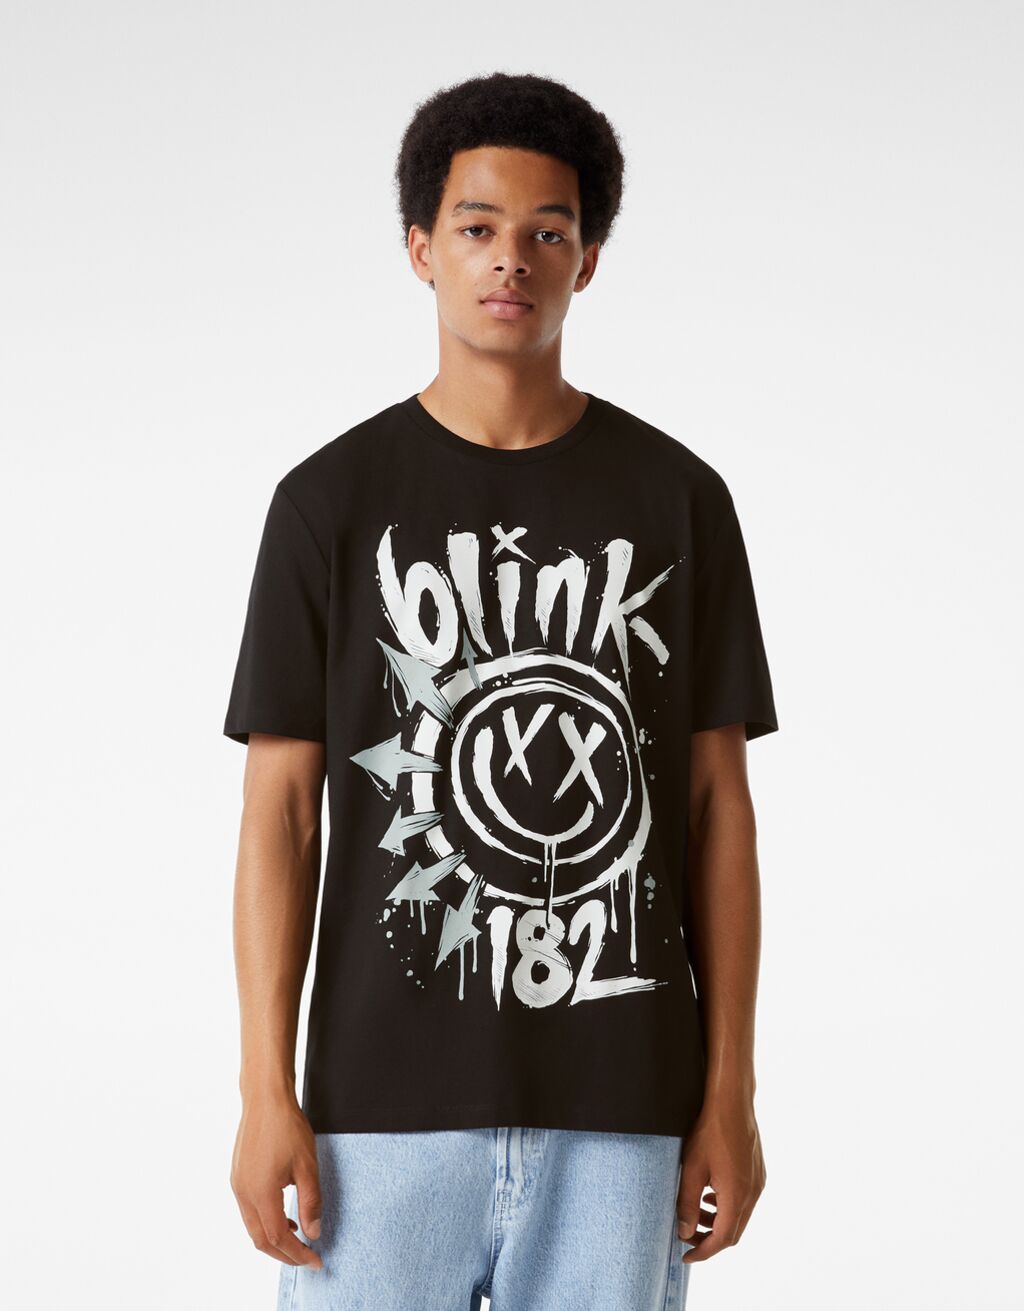 Κοντομάνικη μπλούζα regular fit print Blink 182